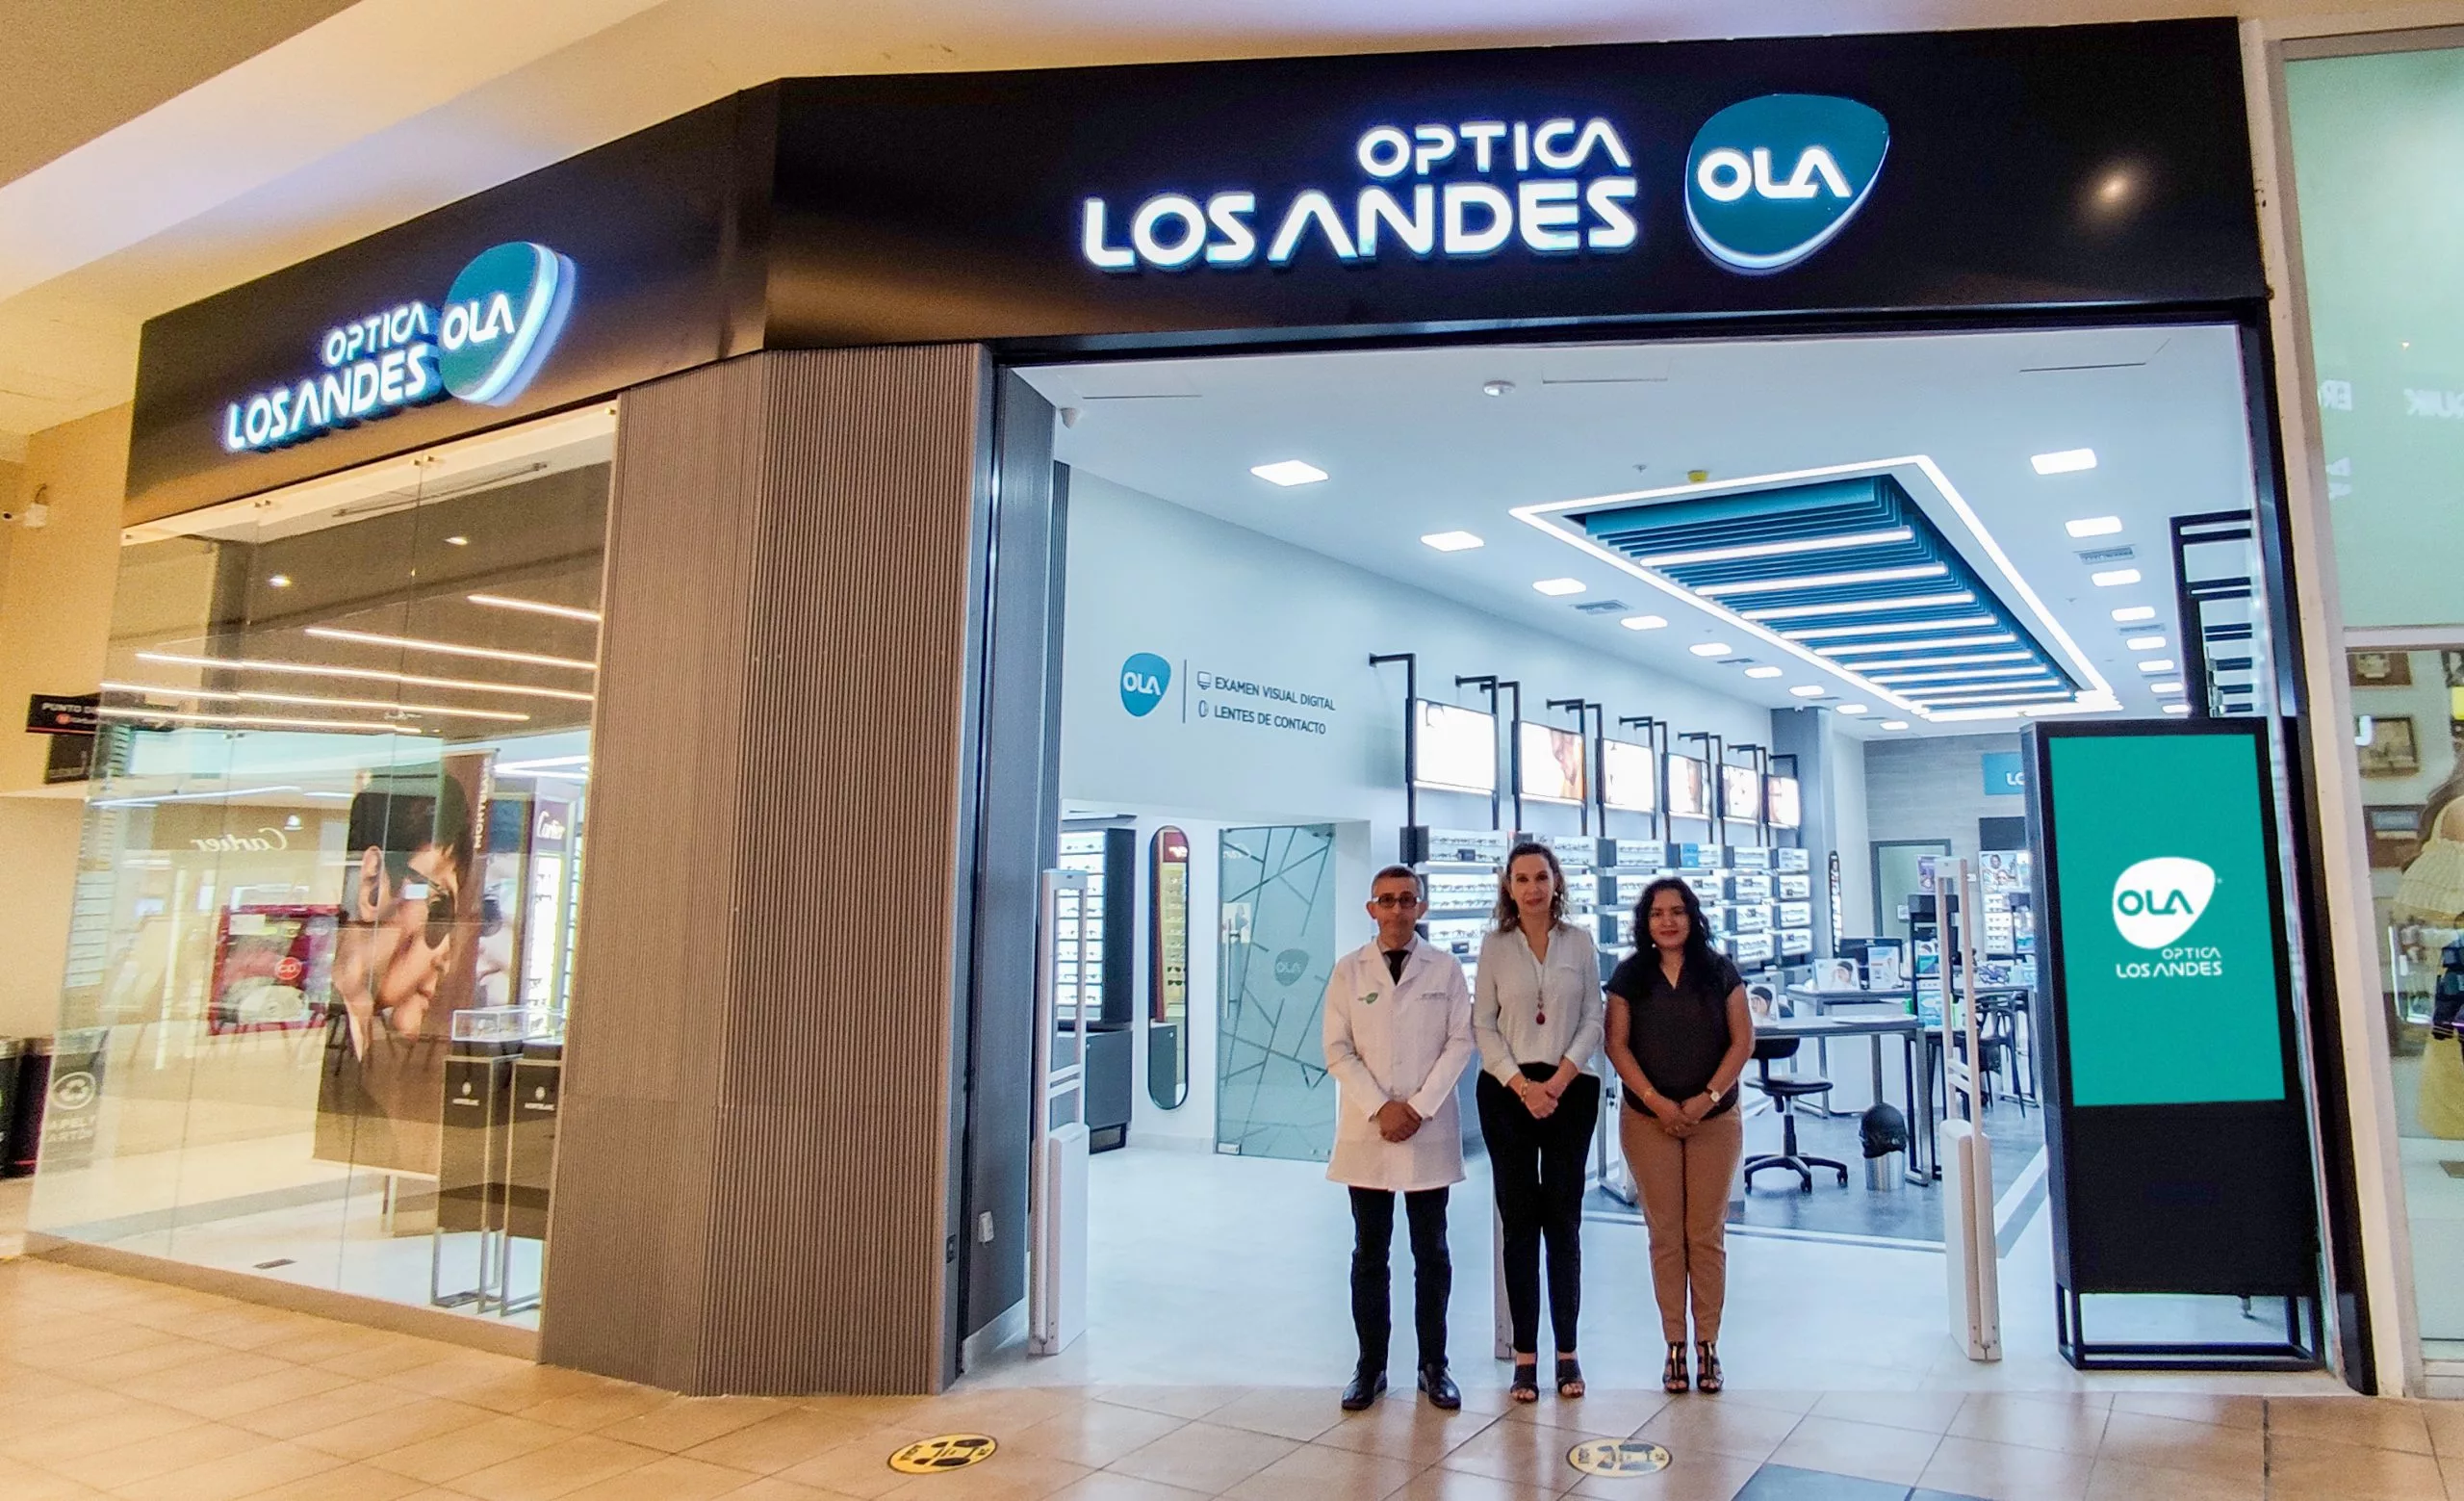 El negocio tiene más de cuarenta años en el mercado en los que ha ido creciendo y se convirtió en el Grupo Óptica Los Andes (OLA) que lo conforman las ópticas, Sunglass Hot, Indulentes y Eyes Illusion.